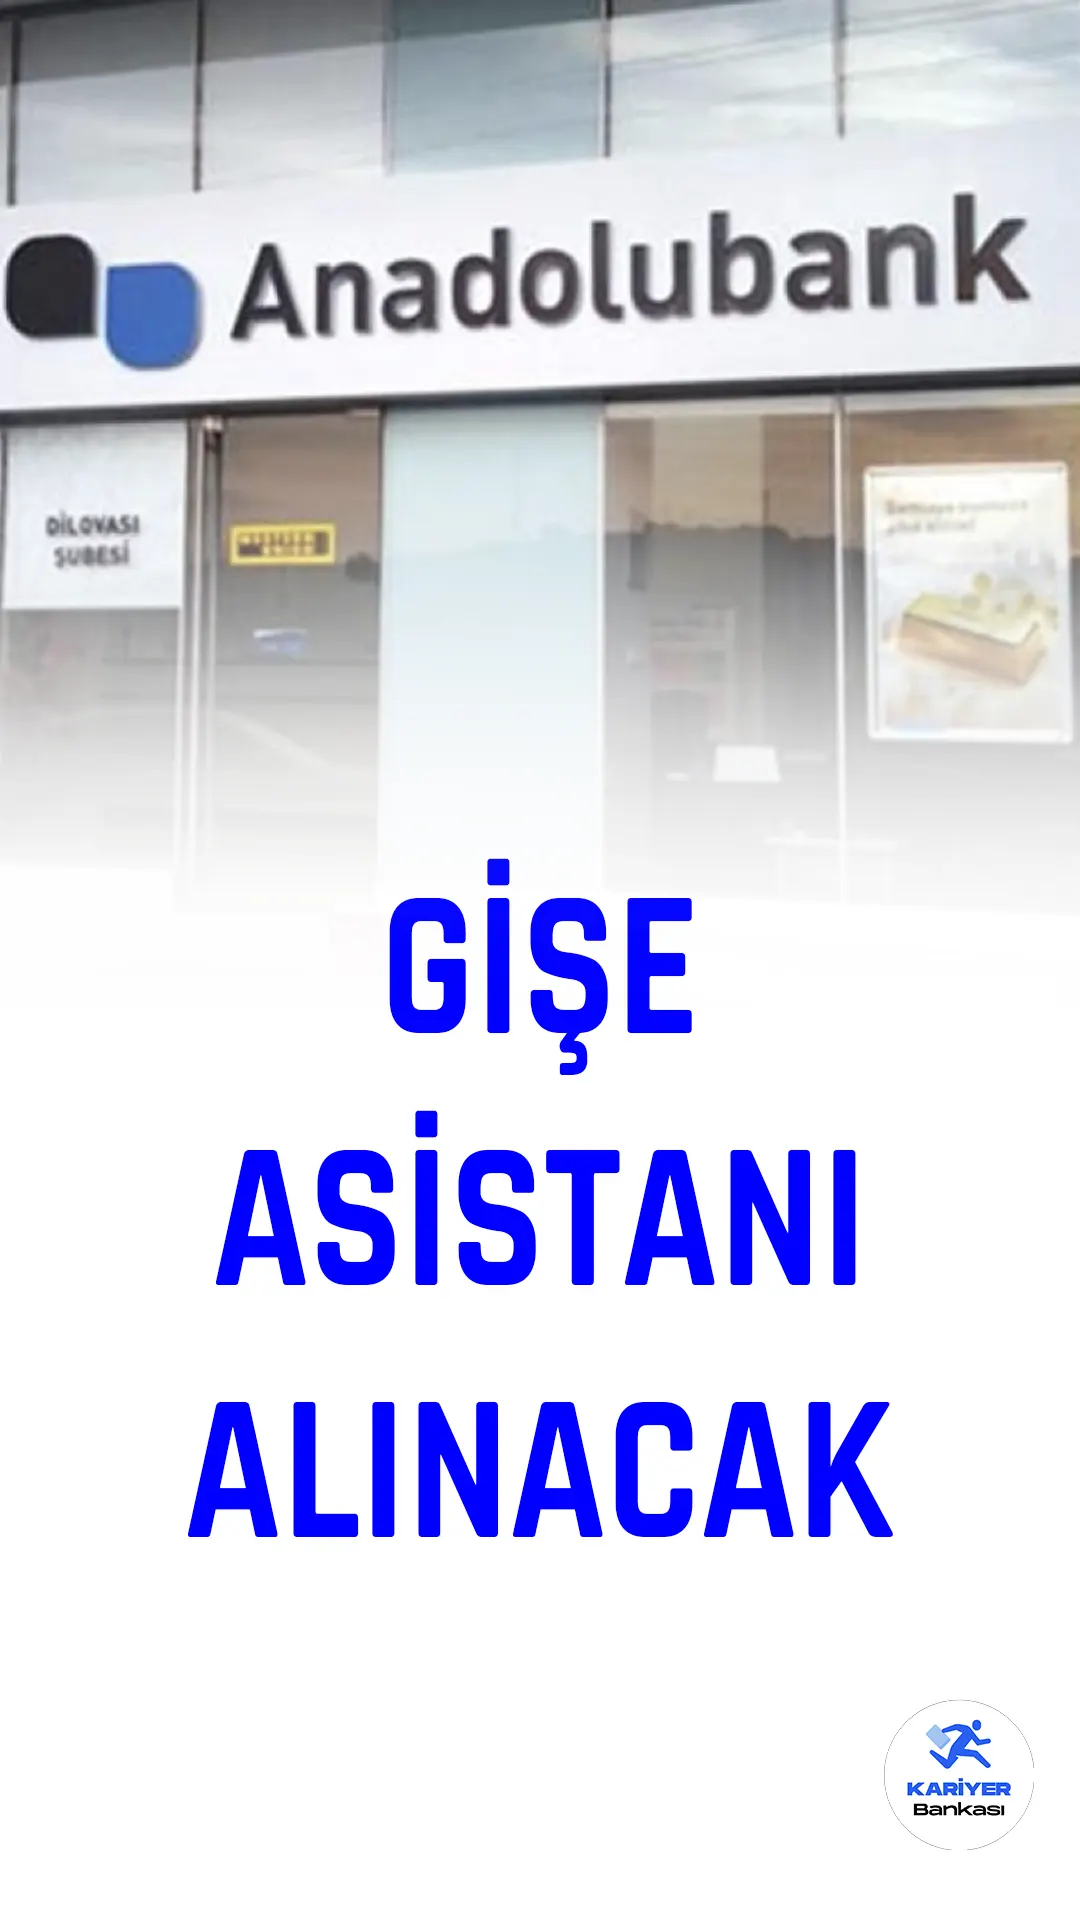 Anadolubank, bankacılık alanında kariyer yapmak isteyen genç yetenekler için Gişe Asistanı pozisyonu için personel alımı yapacağını duyurdu.